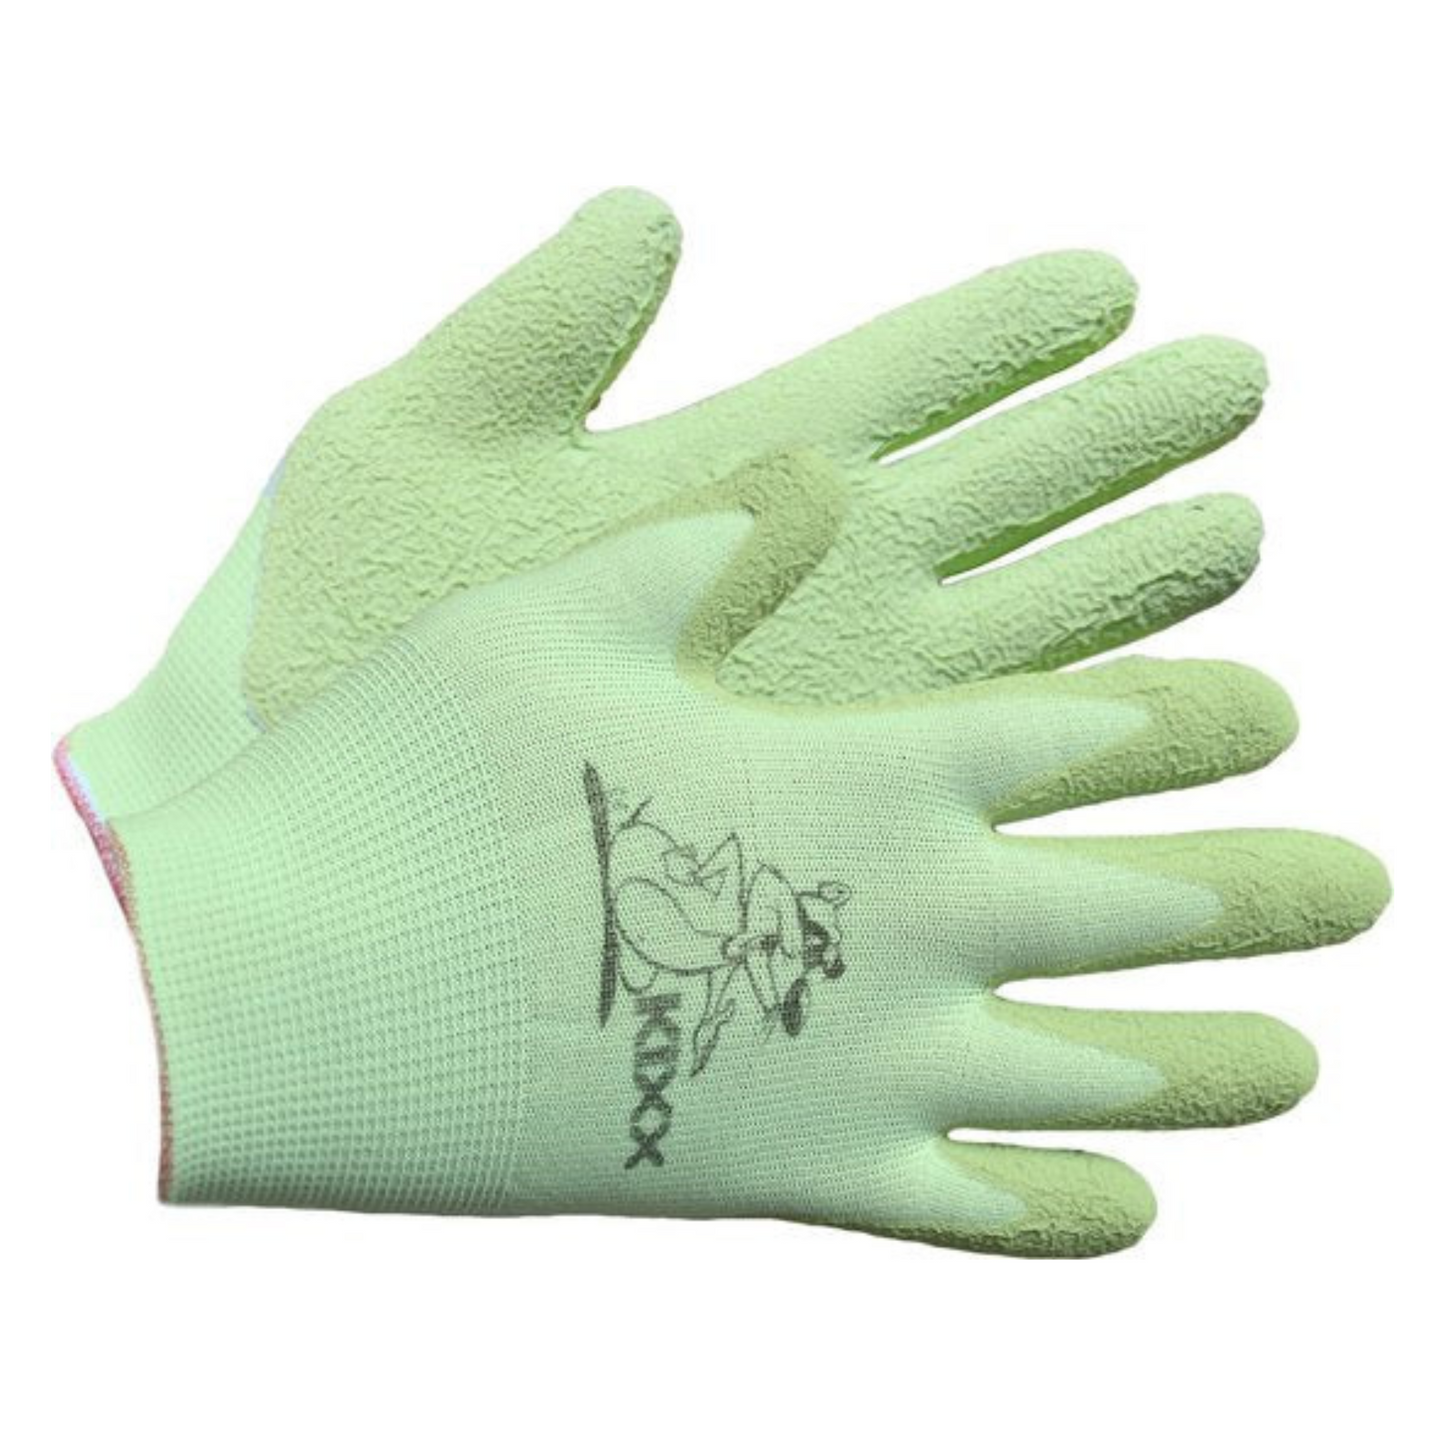 Children's Gardening Gloves size 4